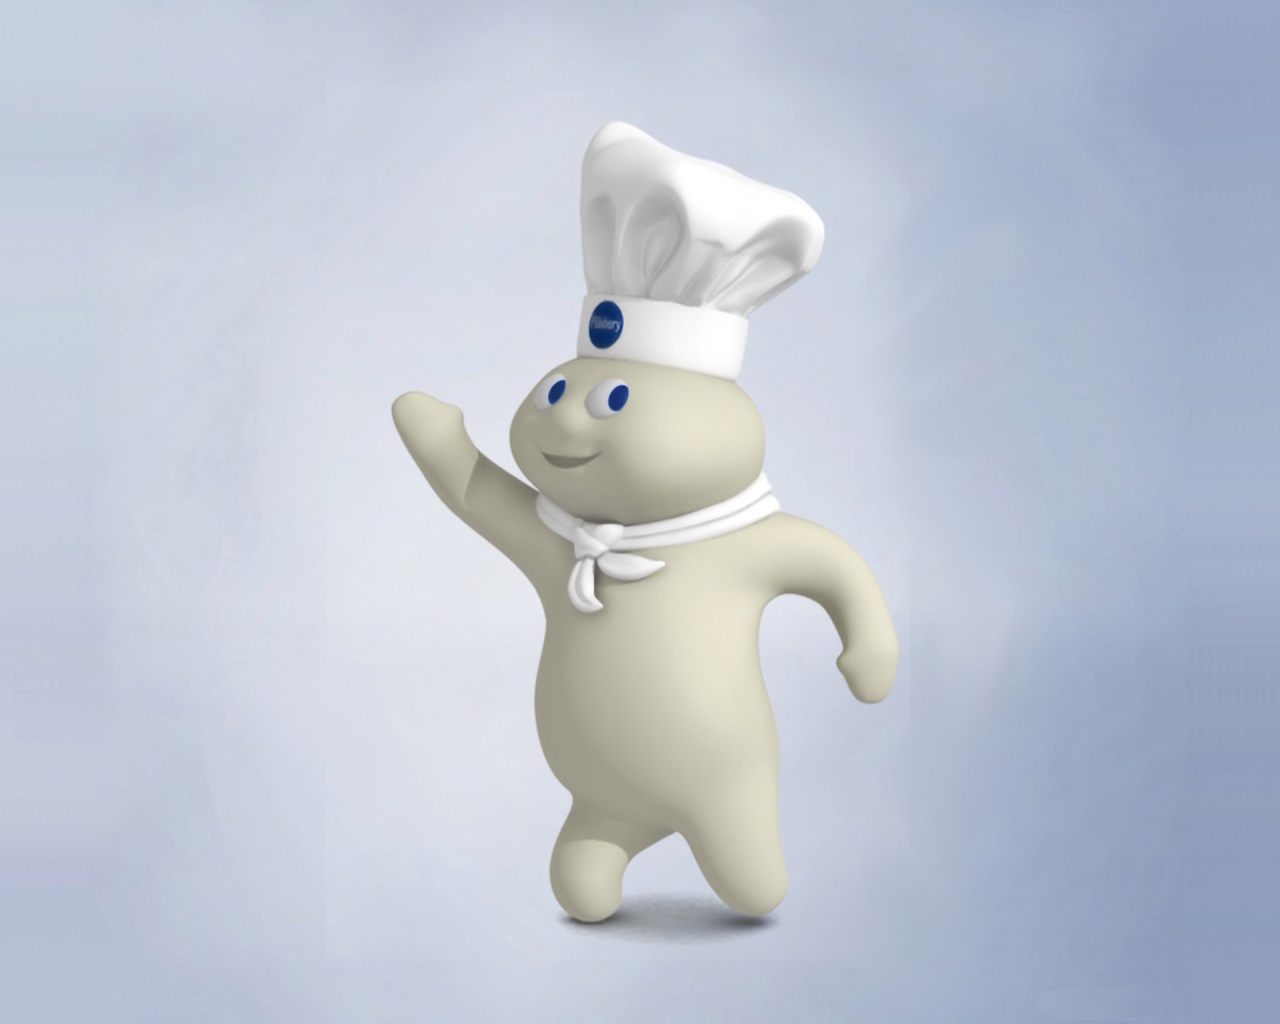 Best Pillsbury Doughboy Background